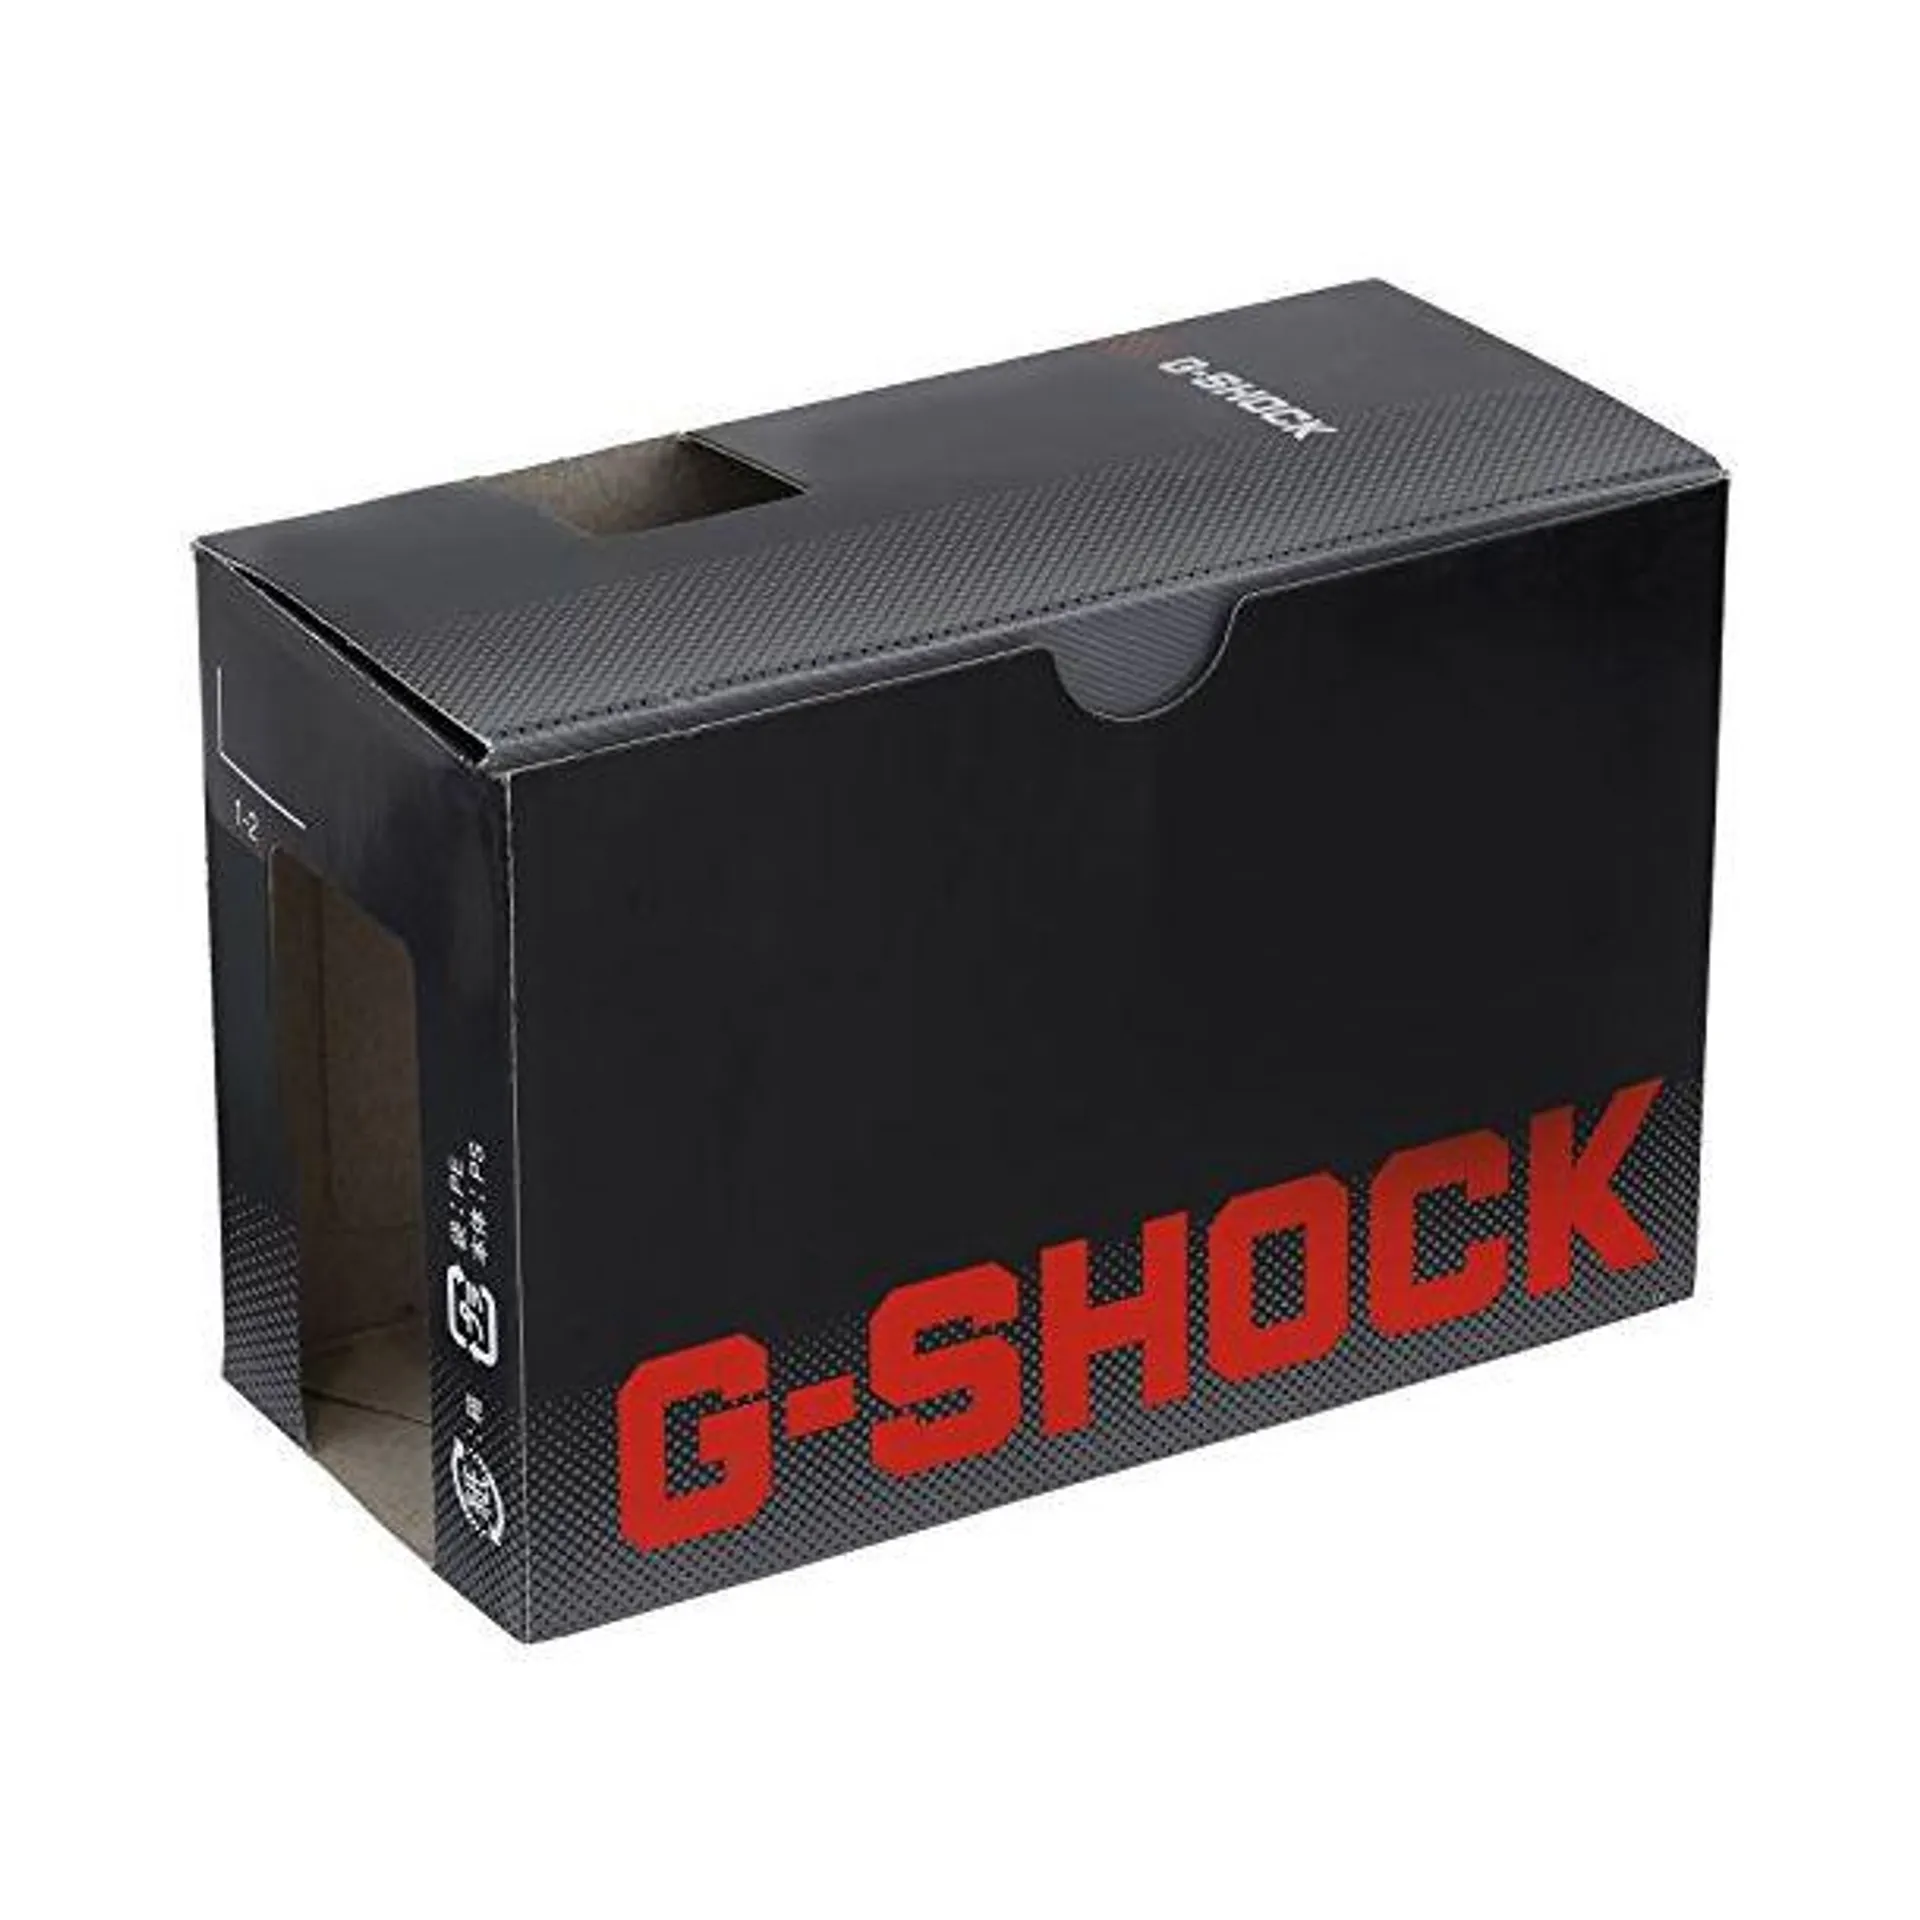 Casio G-Shock GWM500A-1 Digital Wrist Watch